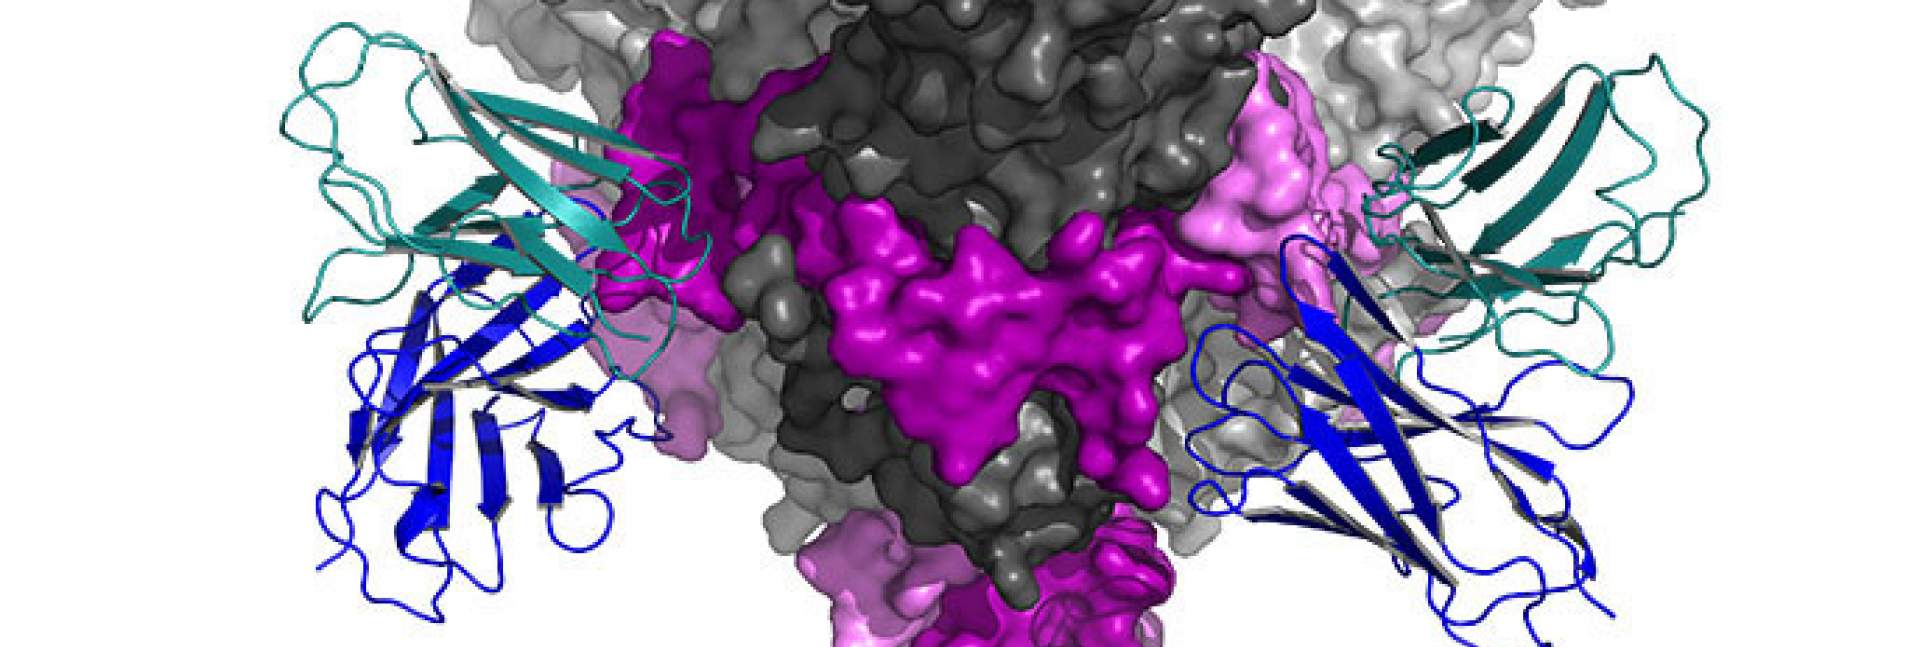 המבנה התלת-ממדי של נוגדן (מסומן בכחול ובטורקיז) הקשור לאתר המטרה שלו בנגיף האבולה 